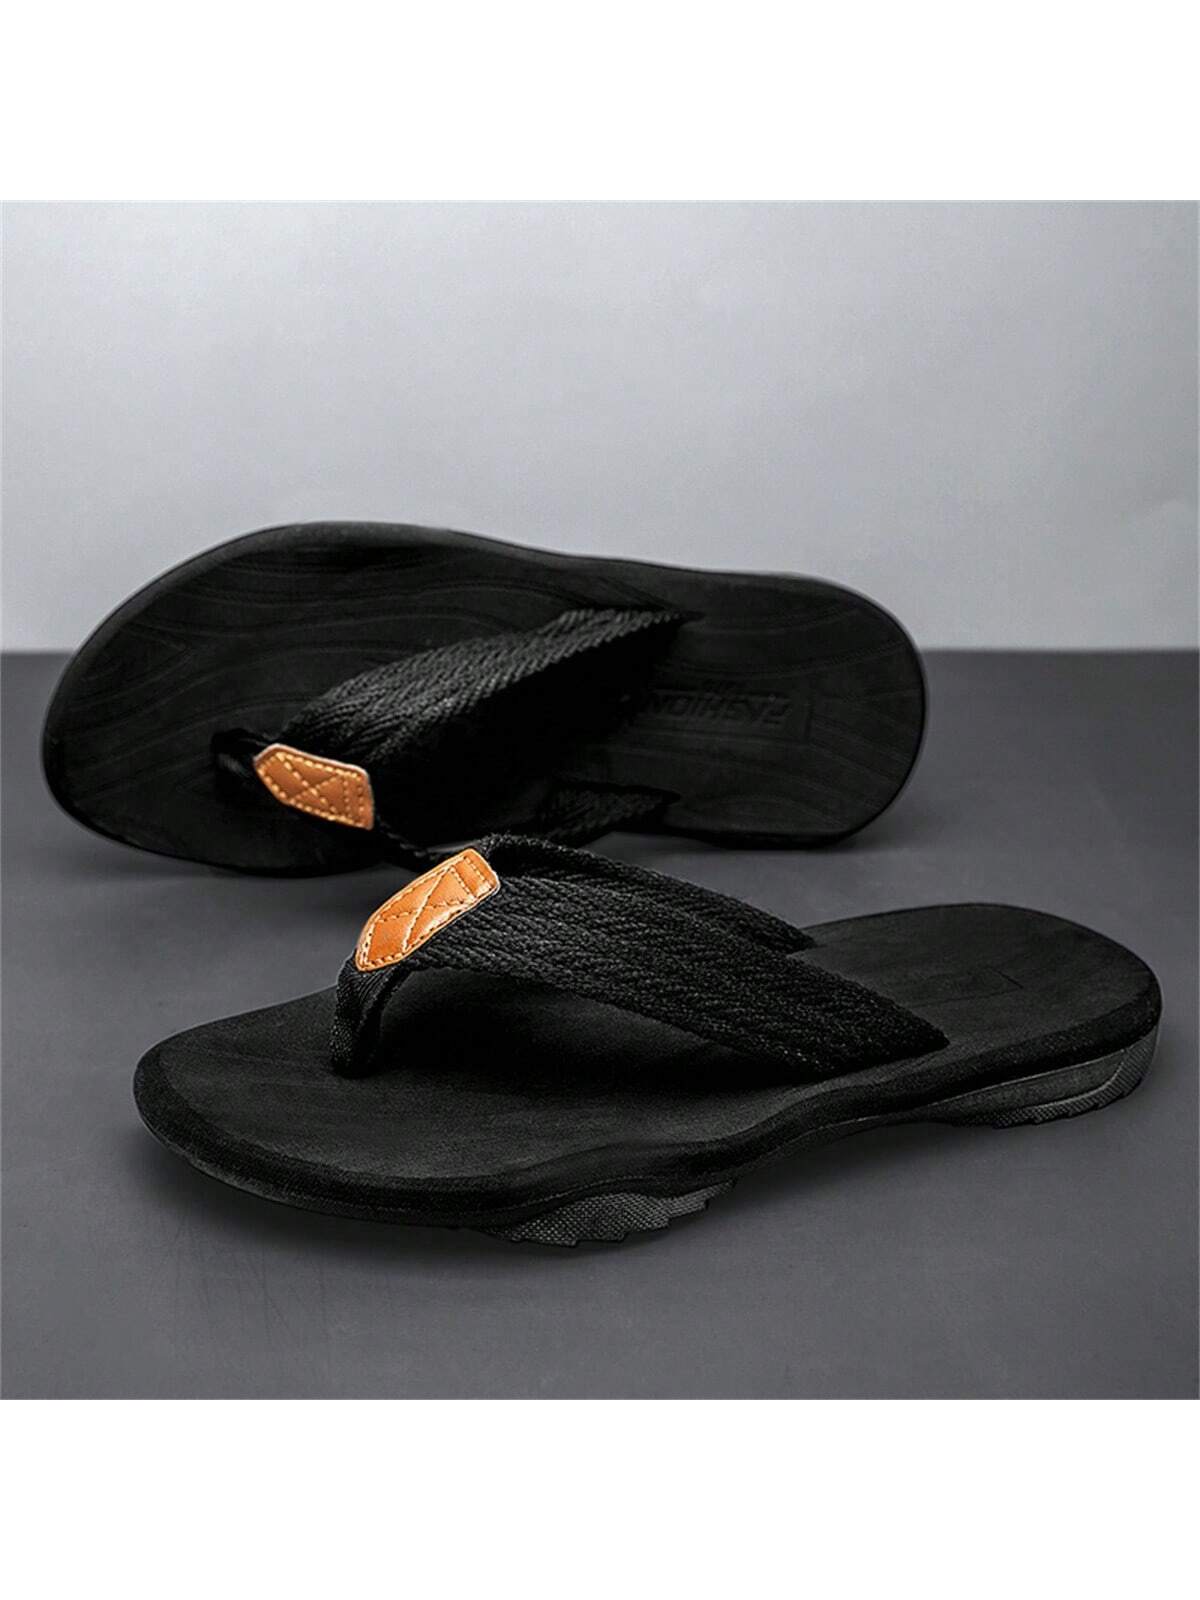 Мужские летние уличные шлепанцы с тканым ремешком и пляжными сандалиями с зажимом для пальцев, черный